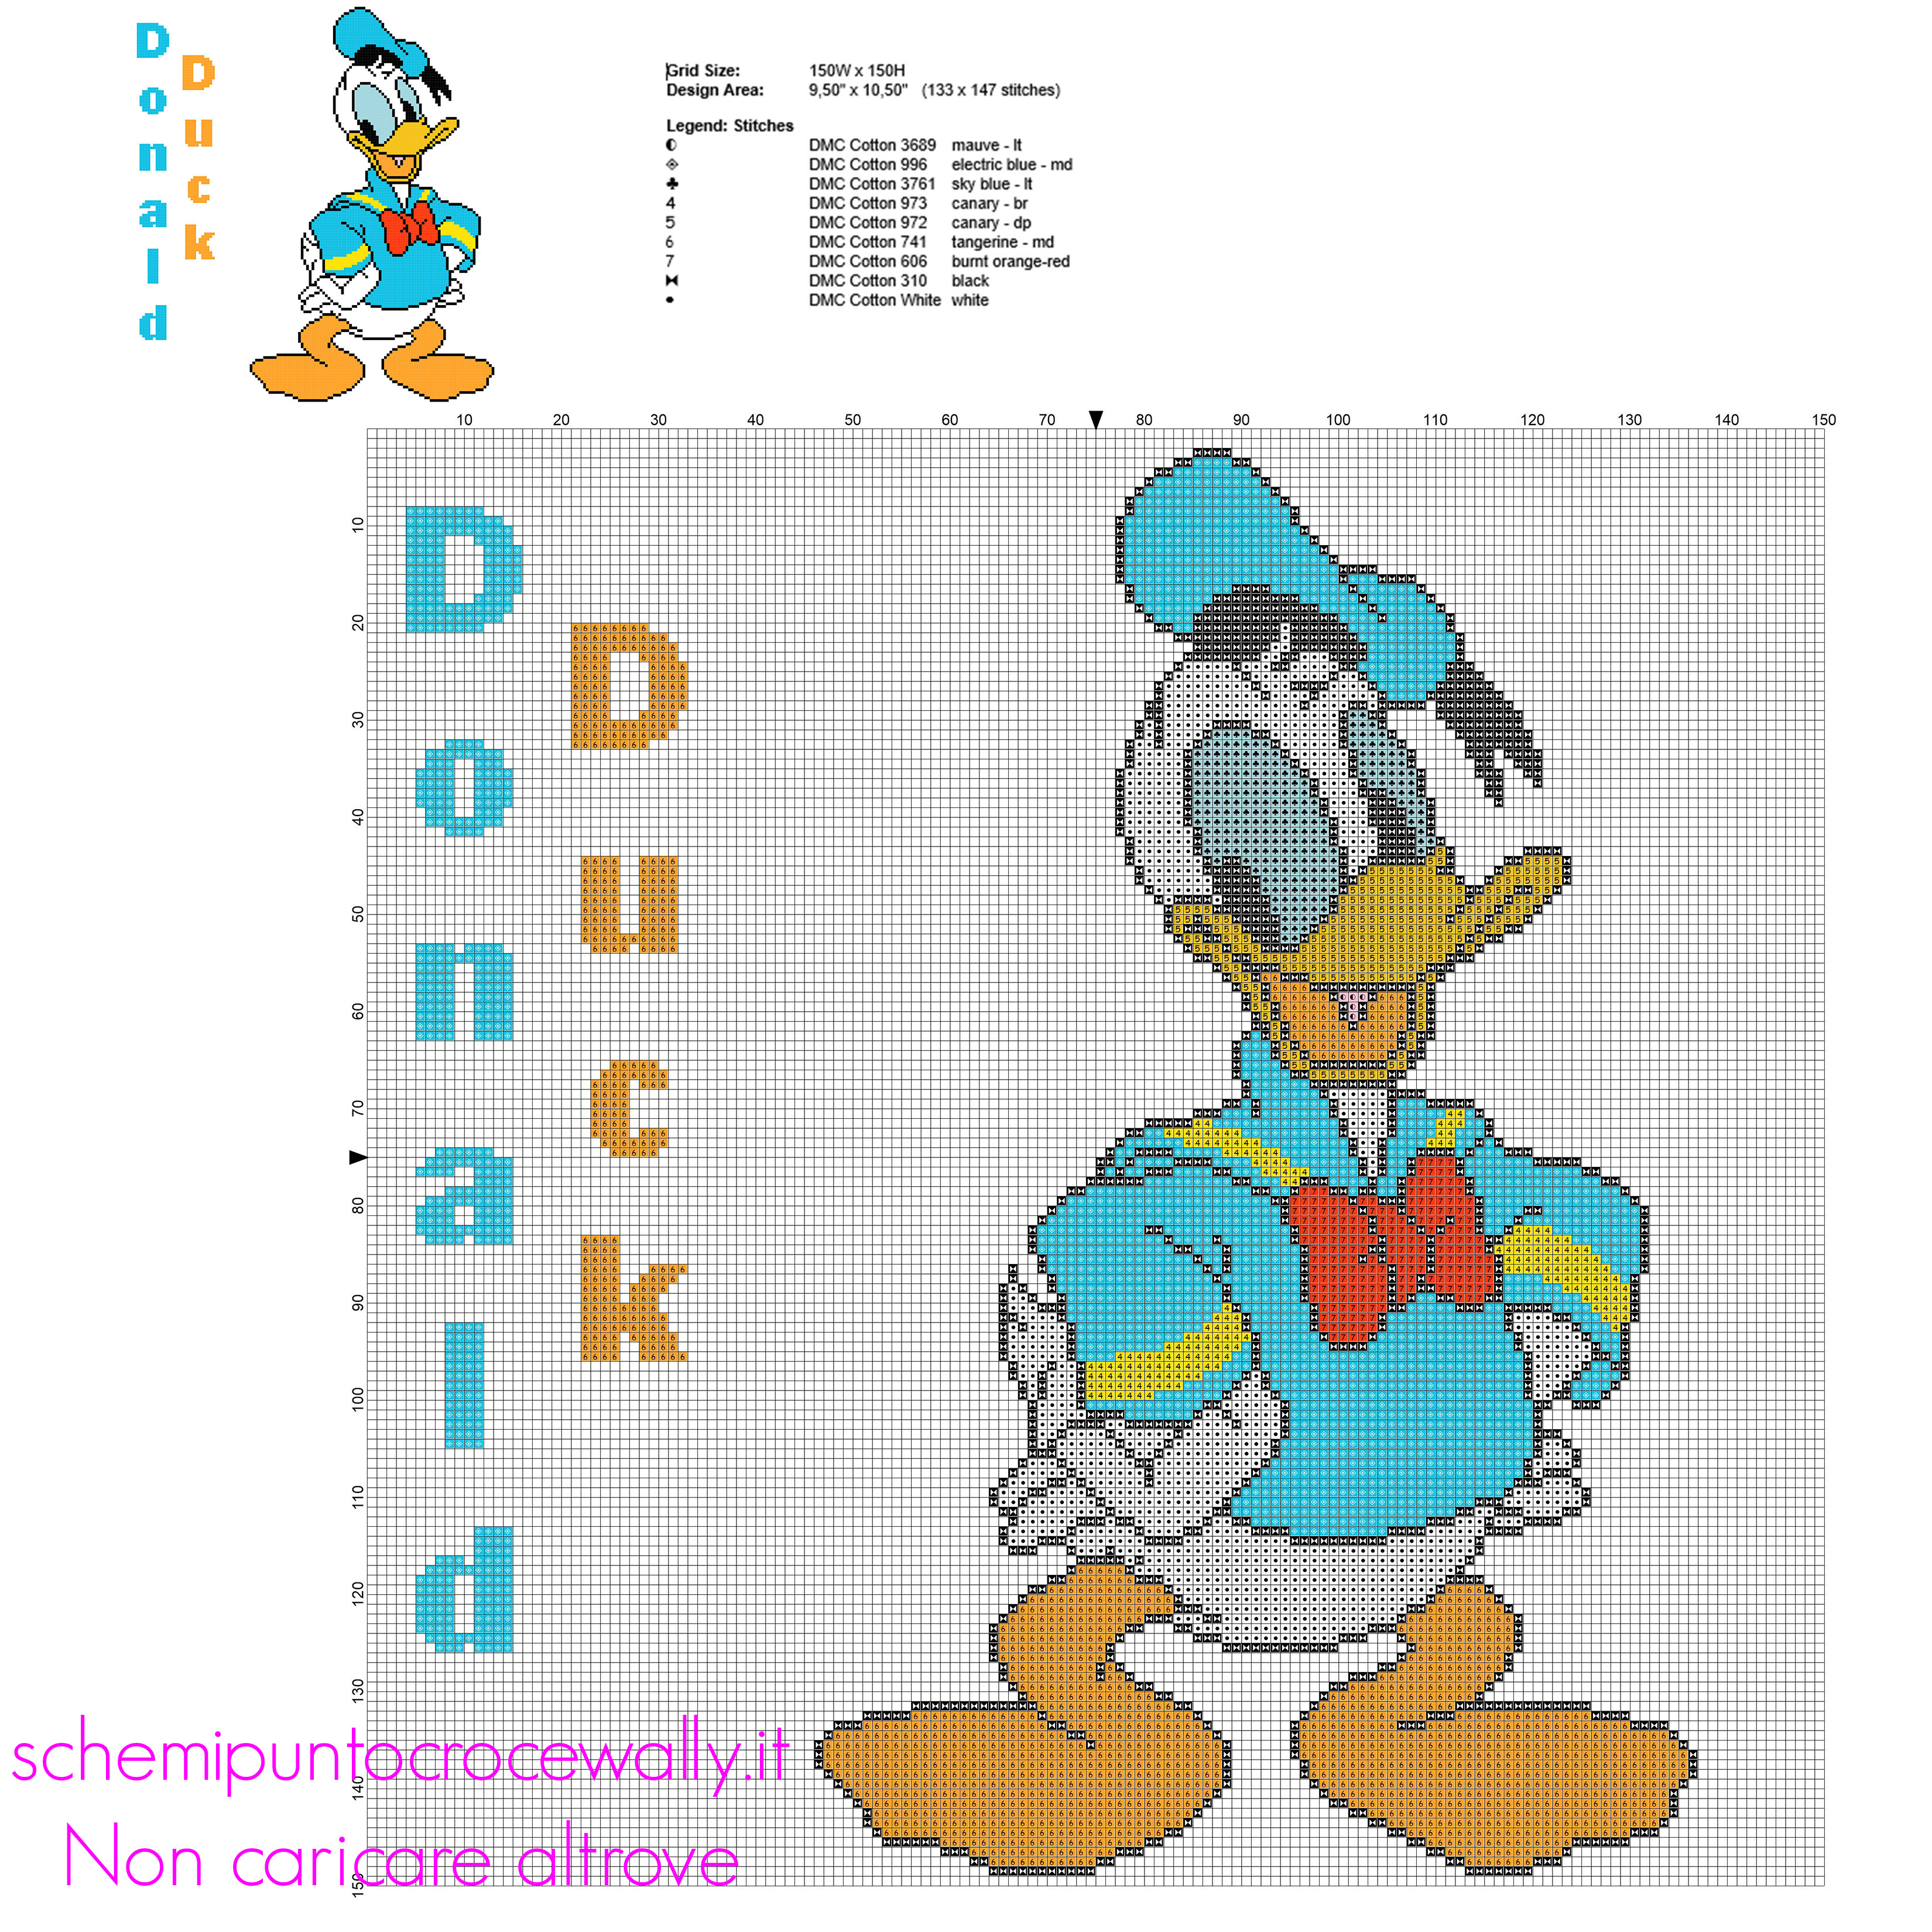 Disney Paperino schema punto croce grande 133 x 147 crocette 9 colori marca DMC